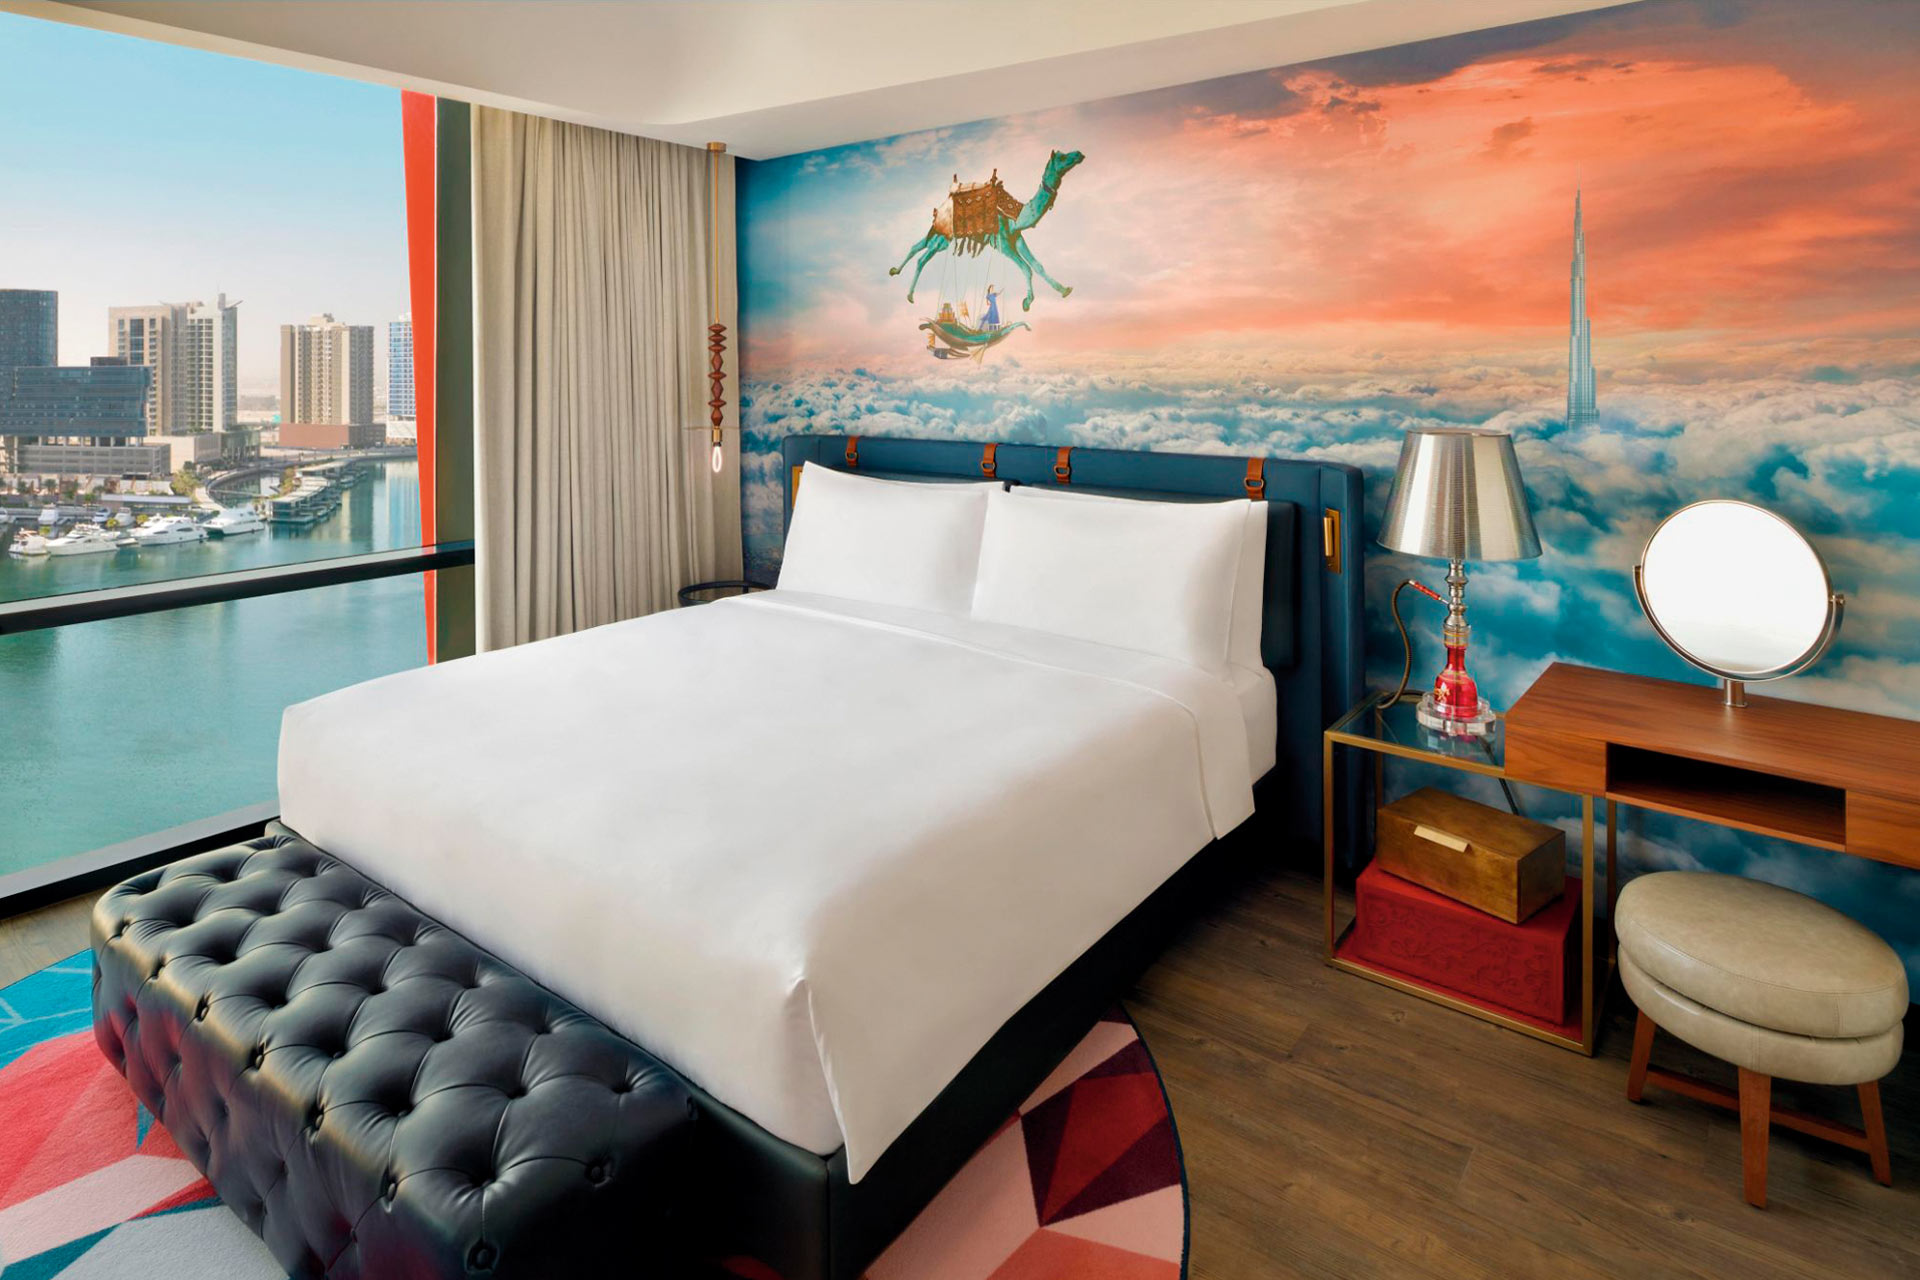 A guestroom suite at Hotel Indigo Dubai Downtown